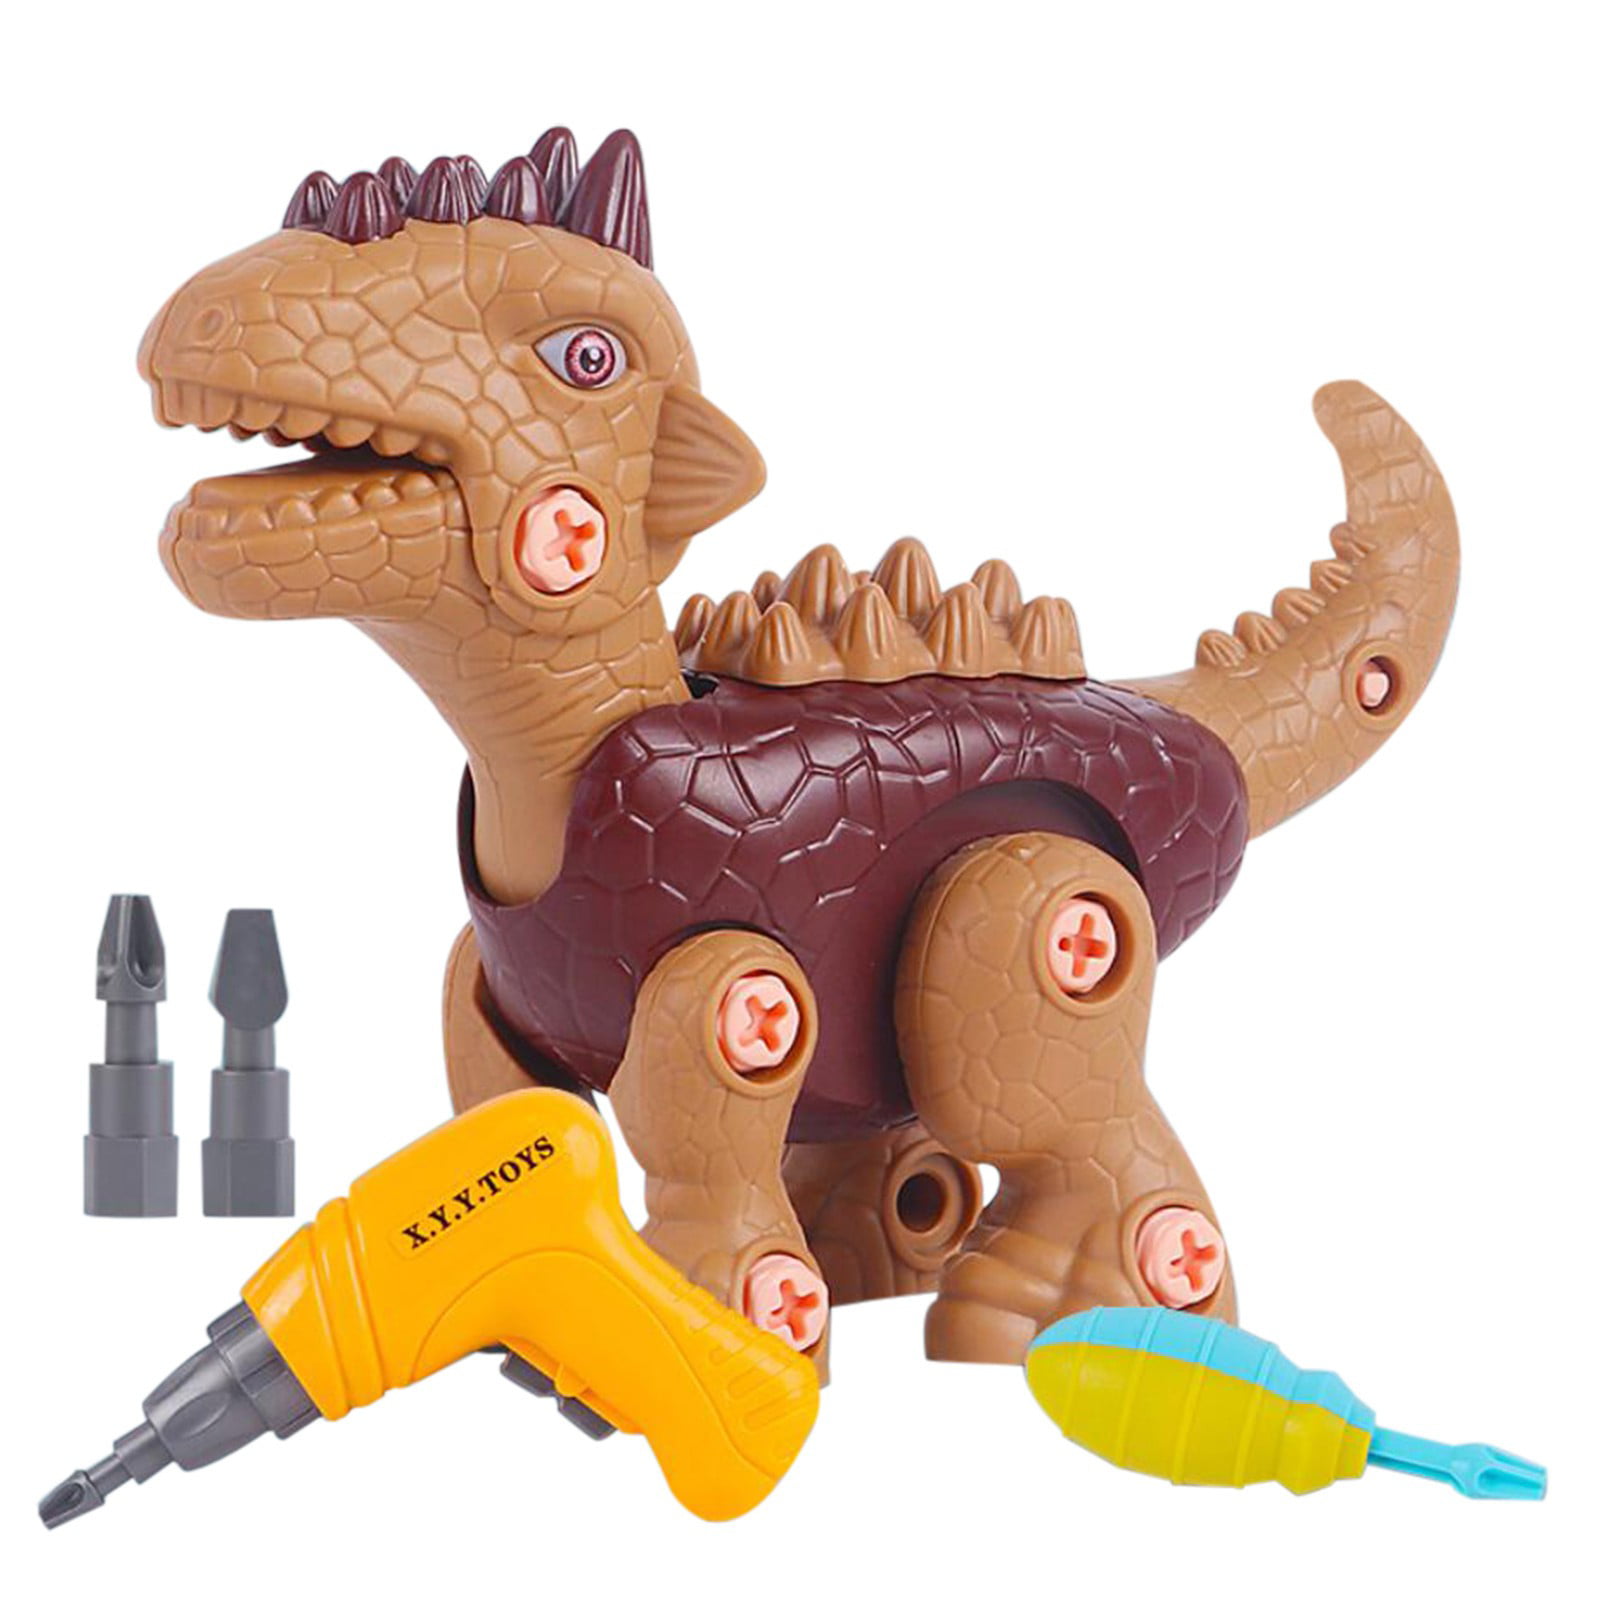 Details about   12 pcs Dinosaur Figures lot Jurassic Park T-Rex Dino Toys assortment Christmas 